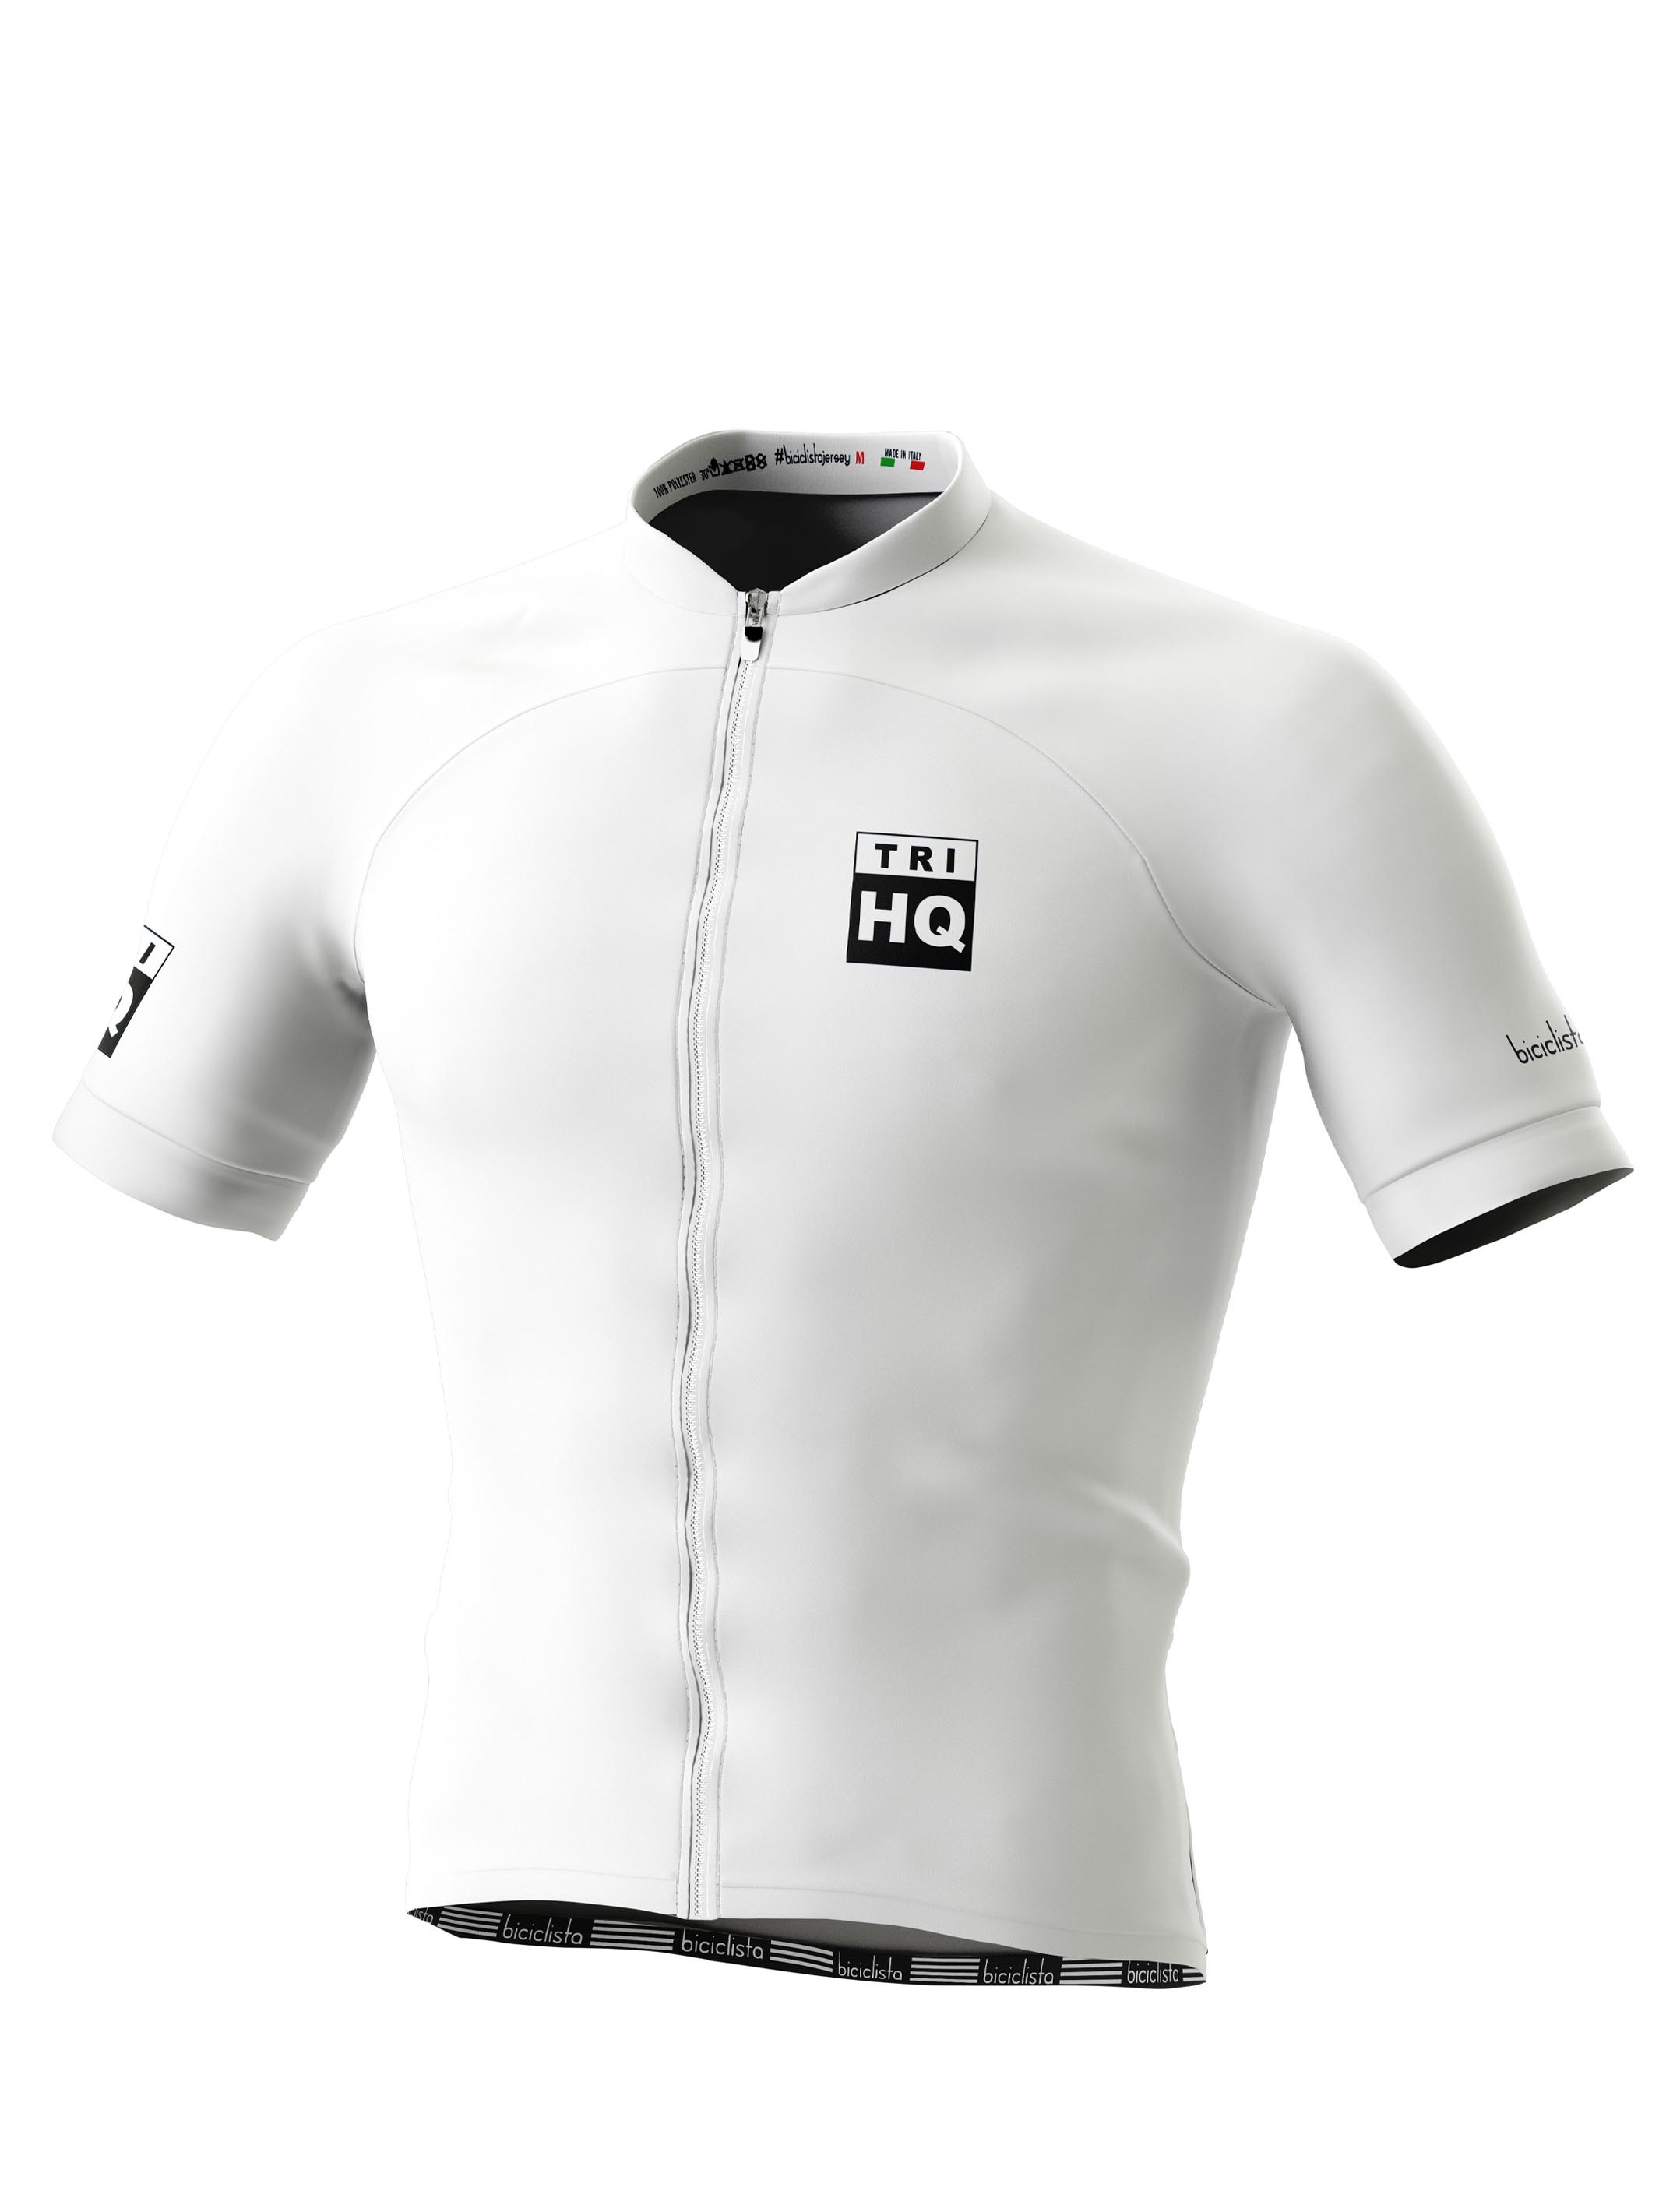 TRI HQ White Cycling Jersey